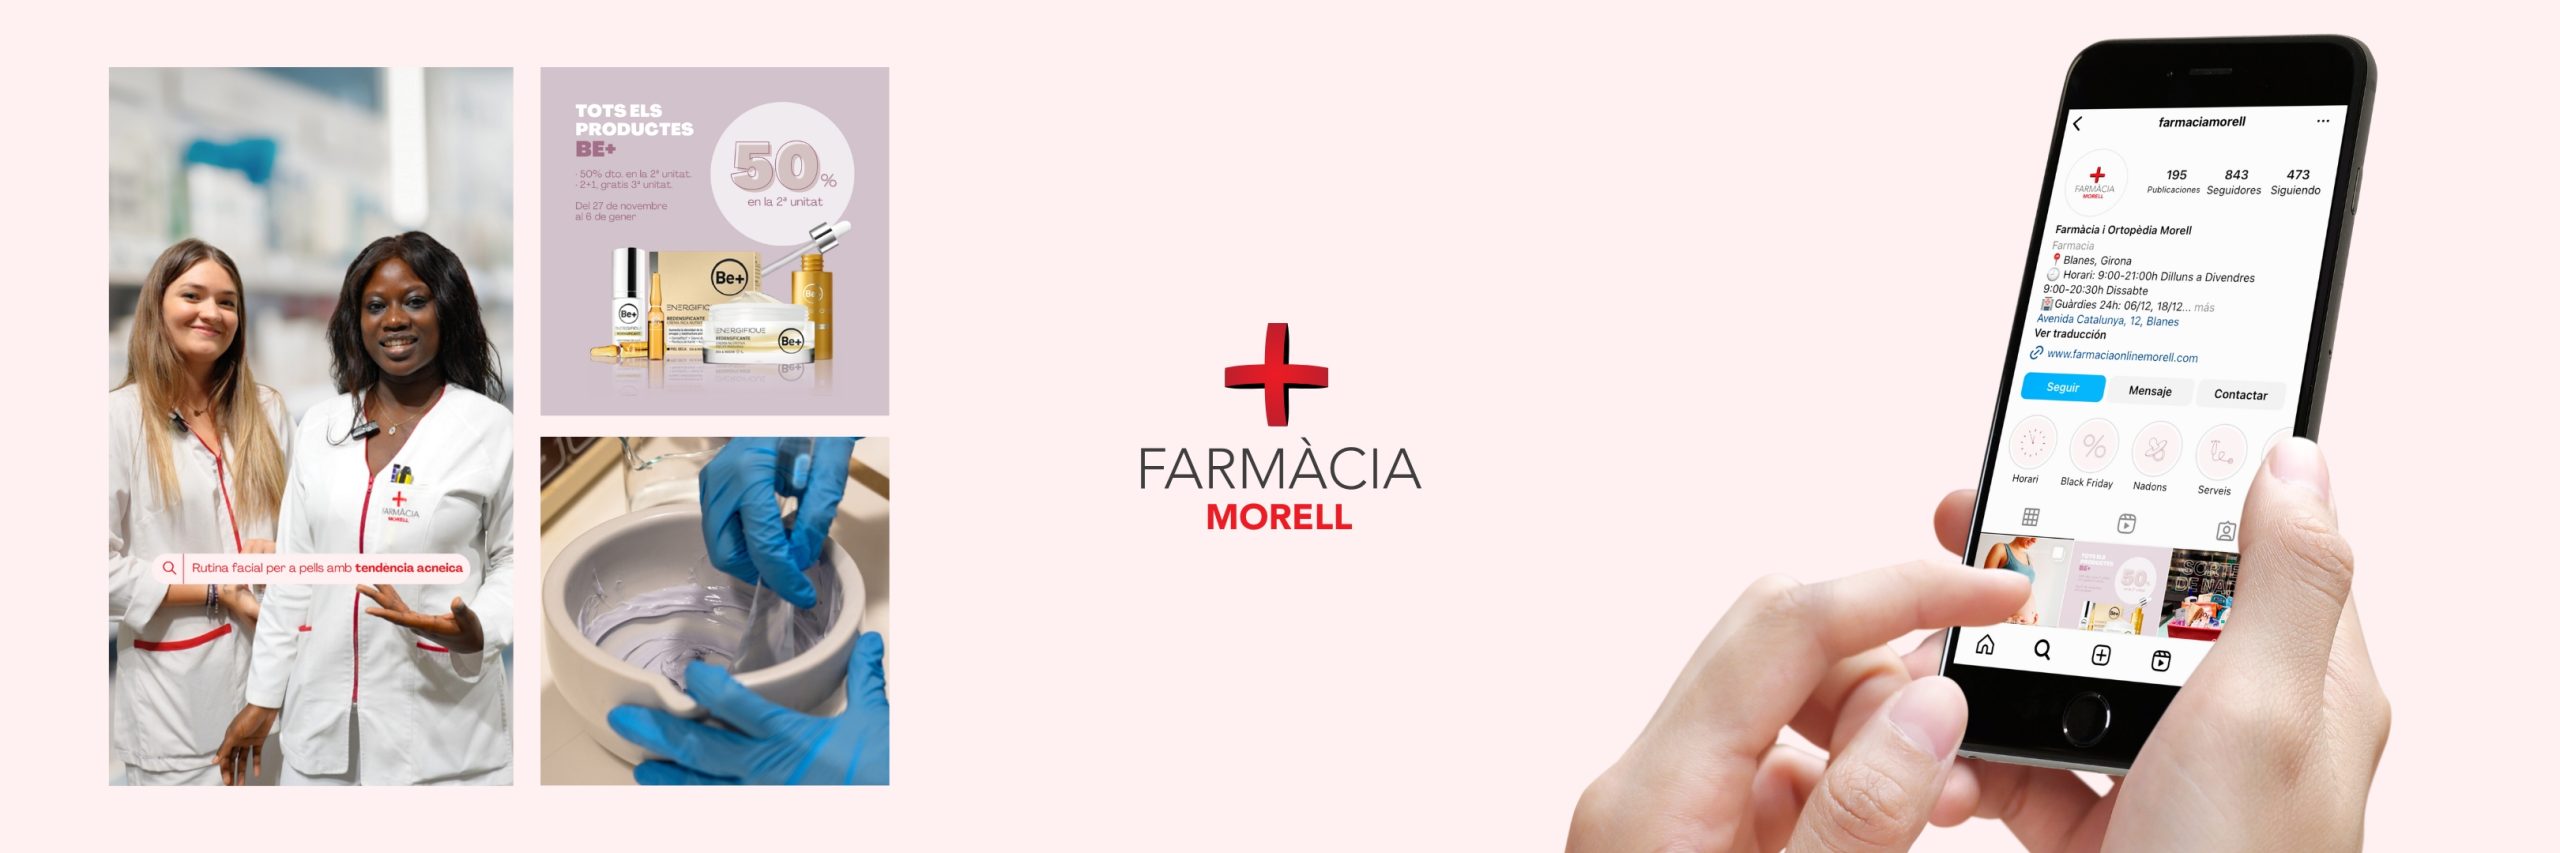 Farmàcia Morell - Fotografia i Gestió de XXSS